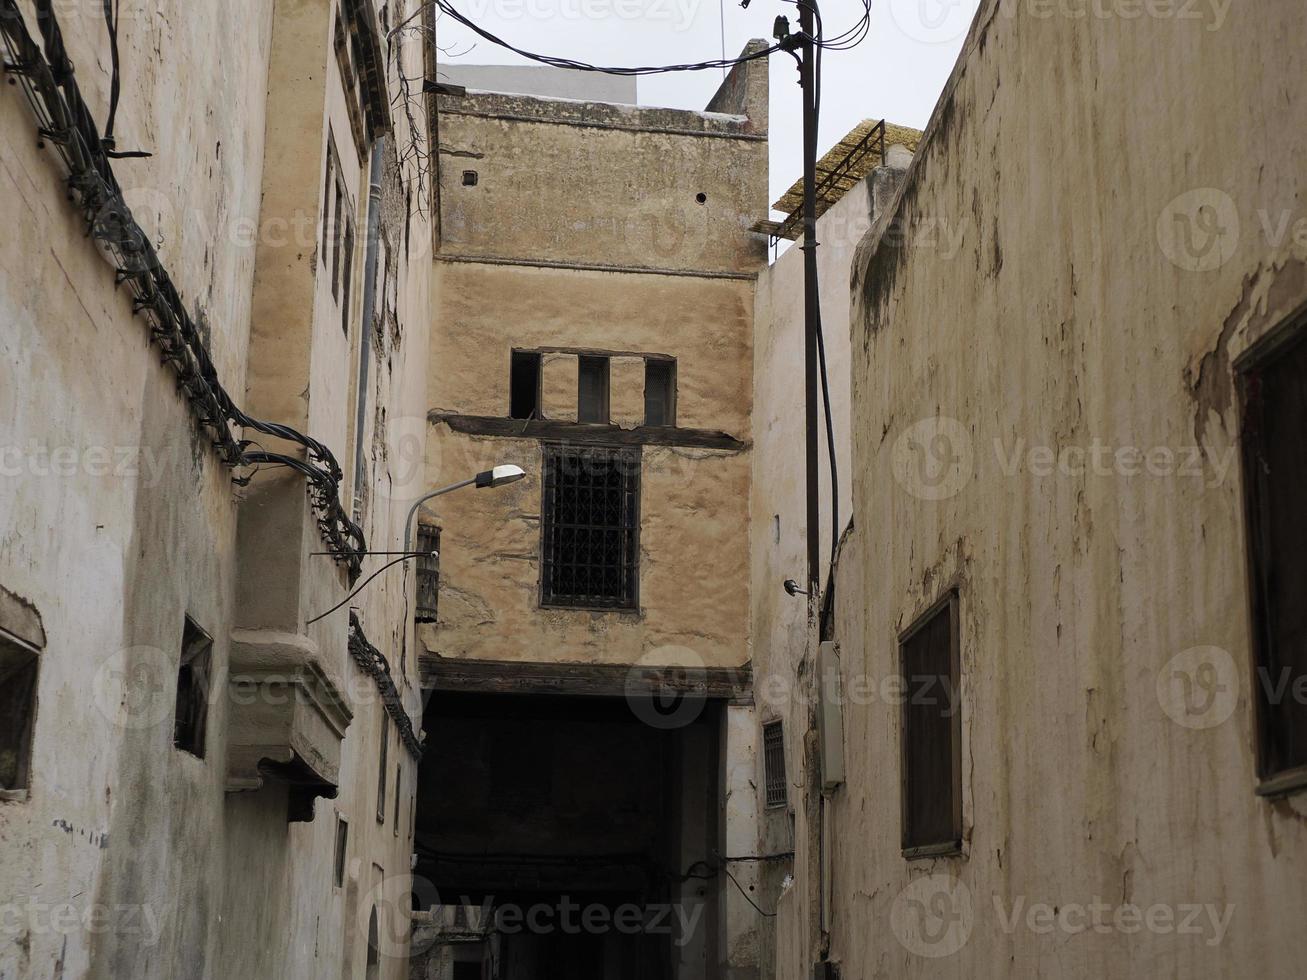 klein straat in fez medina oud dorp. Marokko. foto